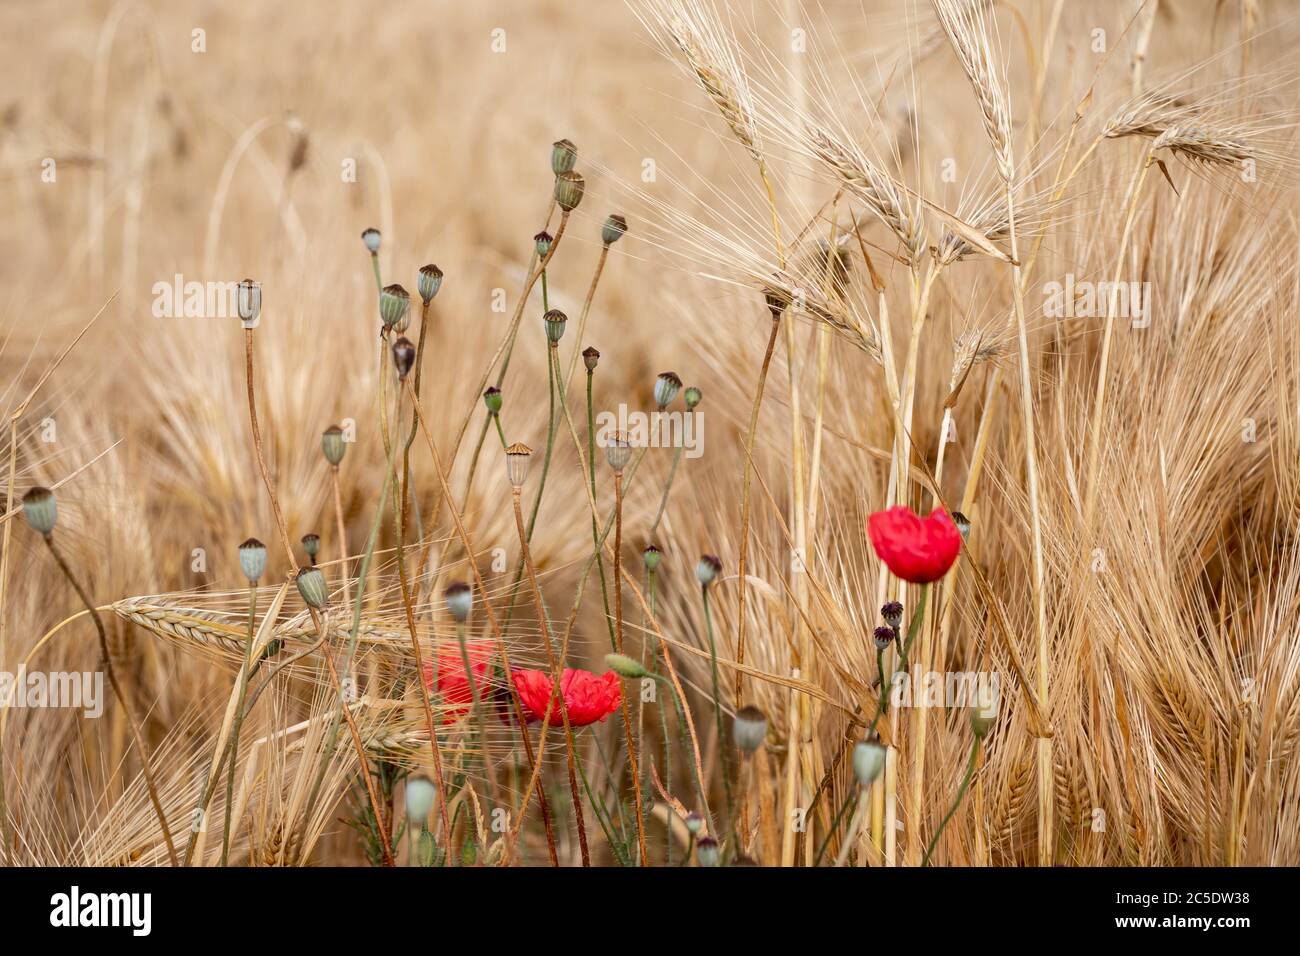 Campo de trigo. Orejas de trigo dorado cerca con amapolas rojas silvestres Foto de stock